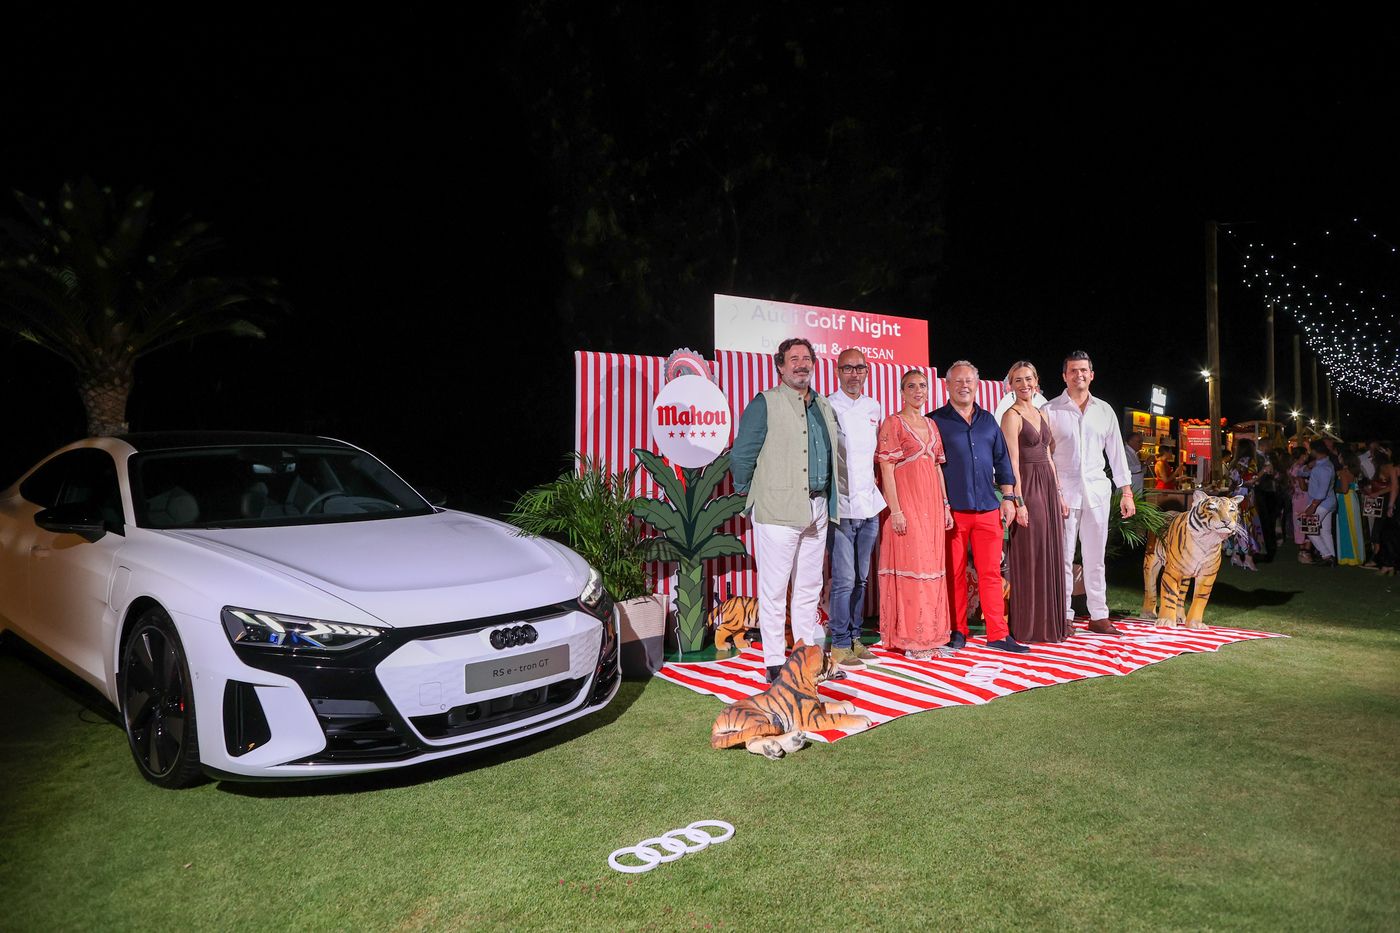 Audi Golf Night by Mahou & Lopesan, la fiesta más cautivadora del verano